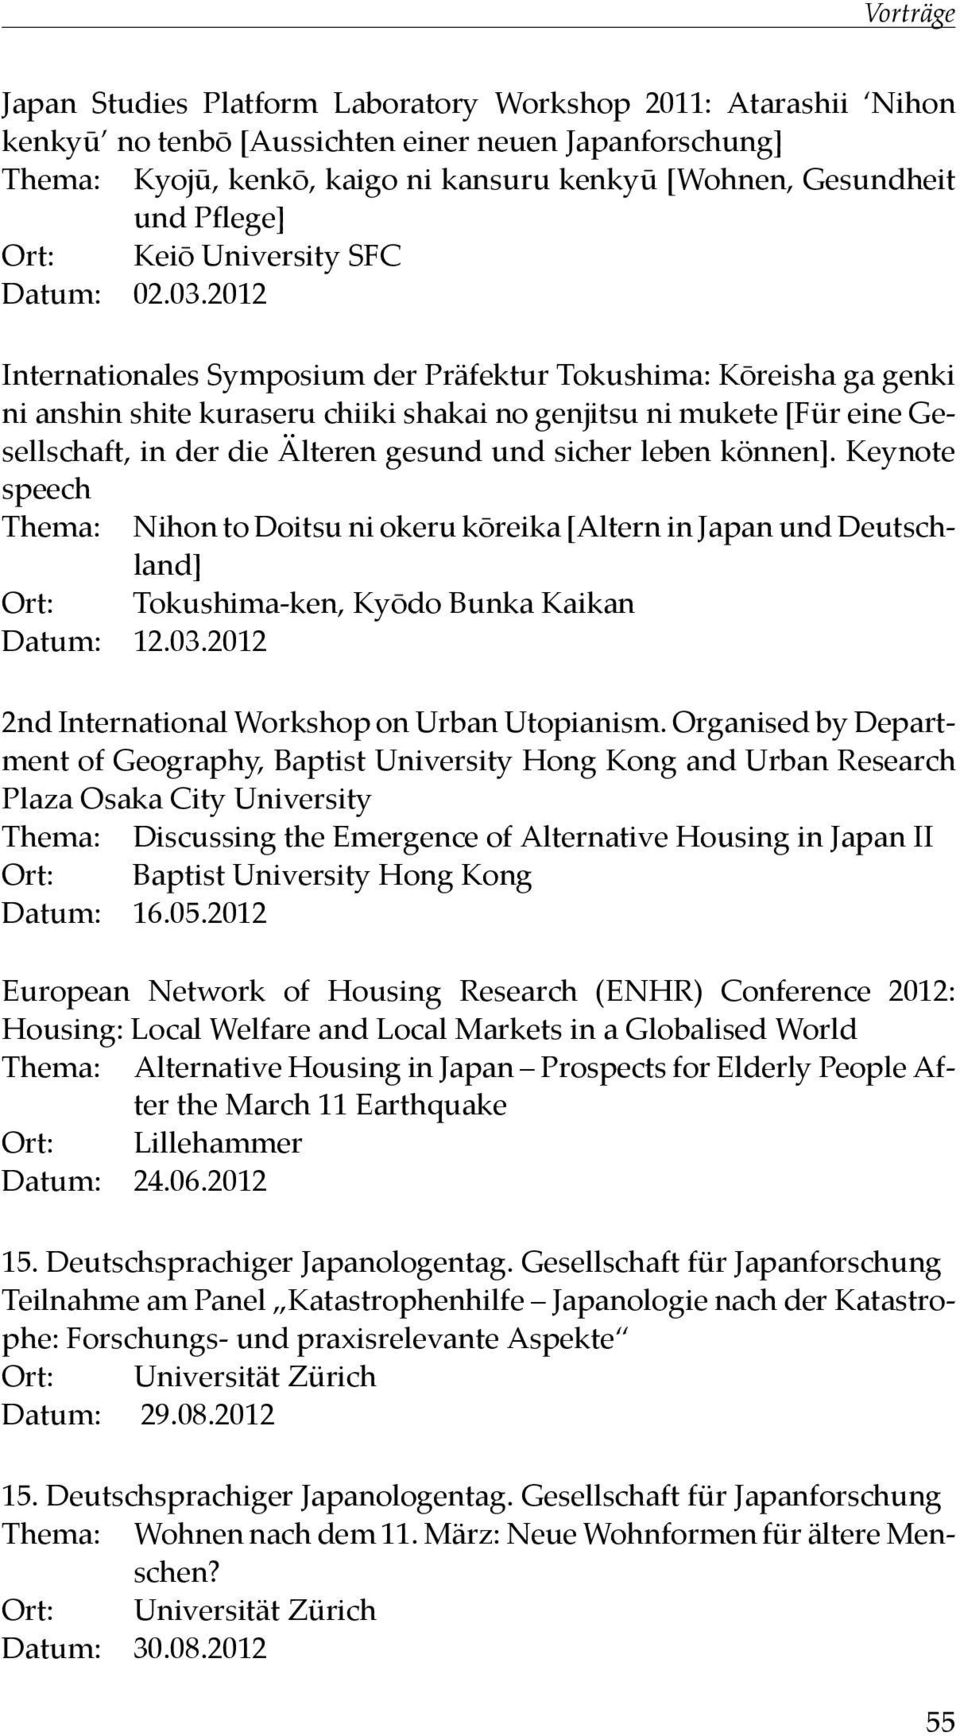 2012 Internationales Symposium der Präfektur Tokushima: Kōreisha ga genki ni anshin shite kuraseru chiiki shakai no genjitsu ni mukete [Für eine Gesellschaft, in der die Älteren gesund und sicher